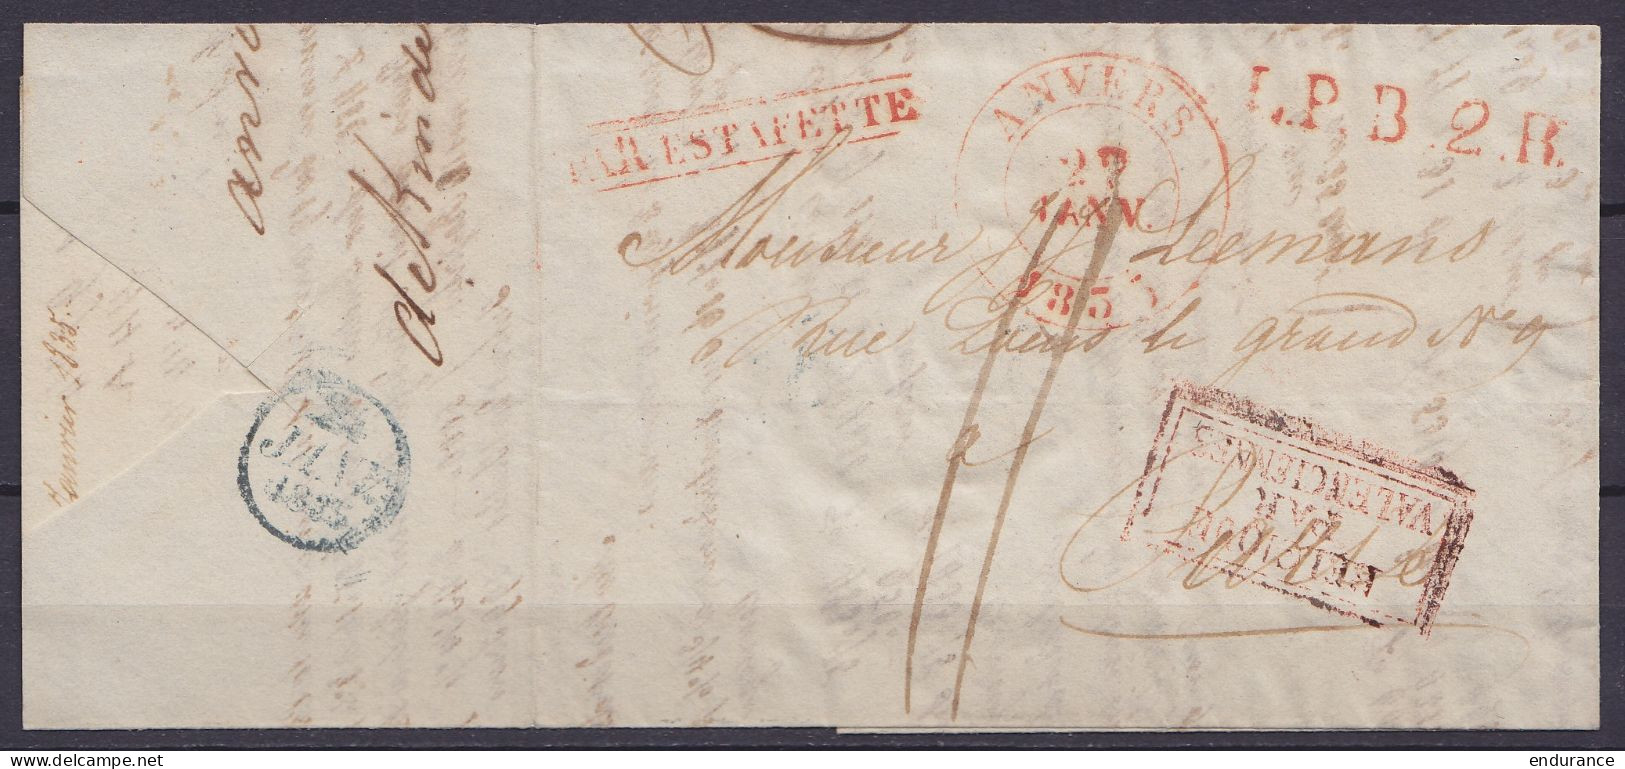 L. Càd ANVERS /22 JANV 1835 Pour PARIS - Griffes "L.P.B.2.R." & [PAR ESTAFETTE] [BELGIQUE PAR VALENCIENNES] - Port "11" - 1830-1849 (Unabhängiges Belgien)